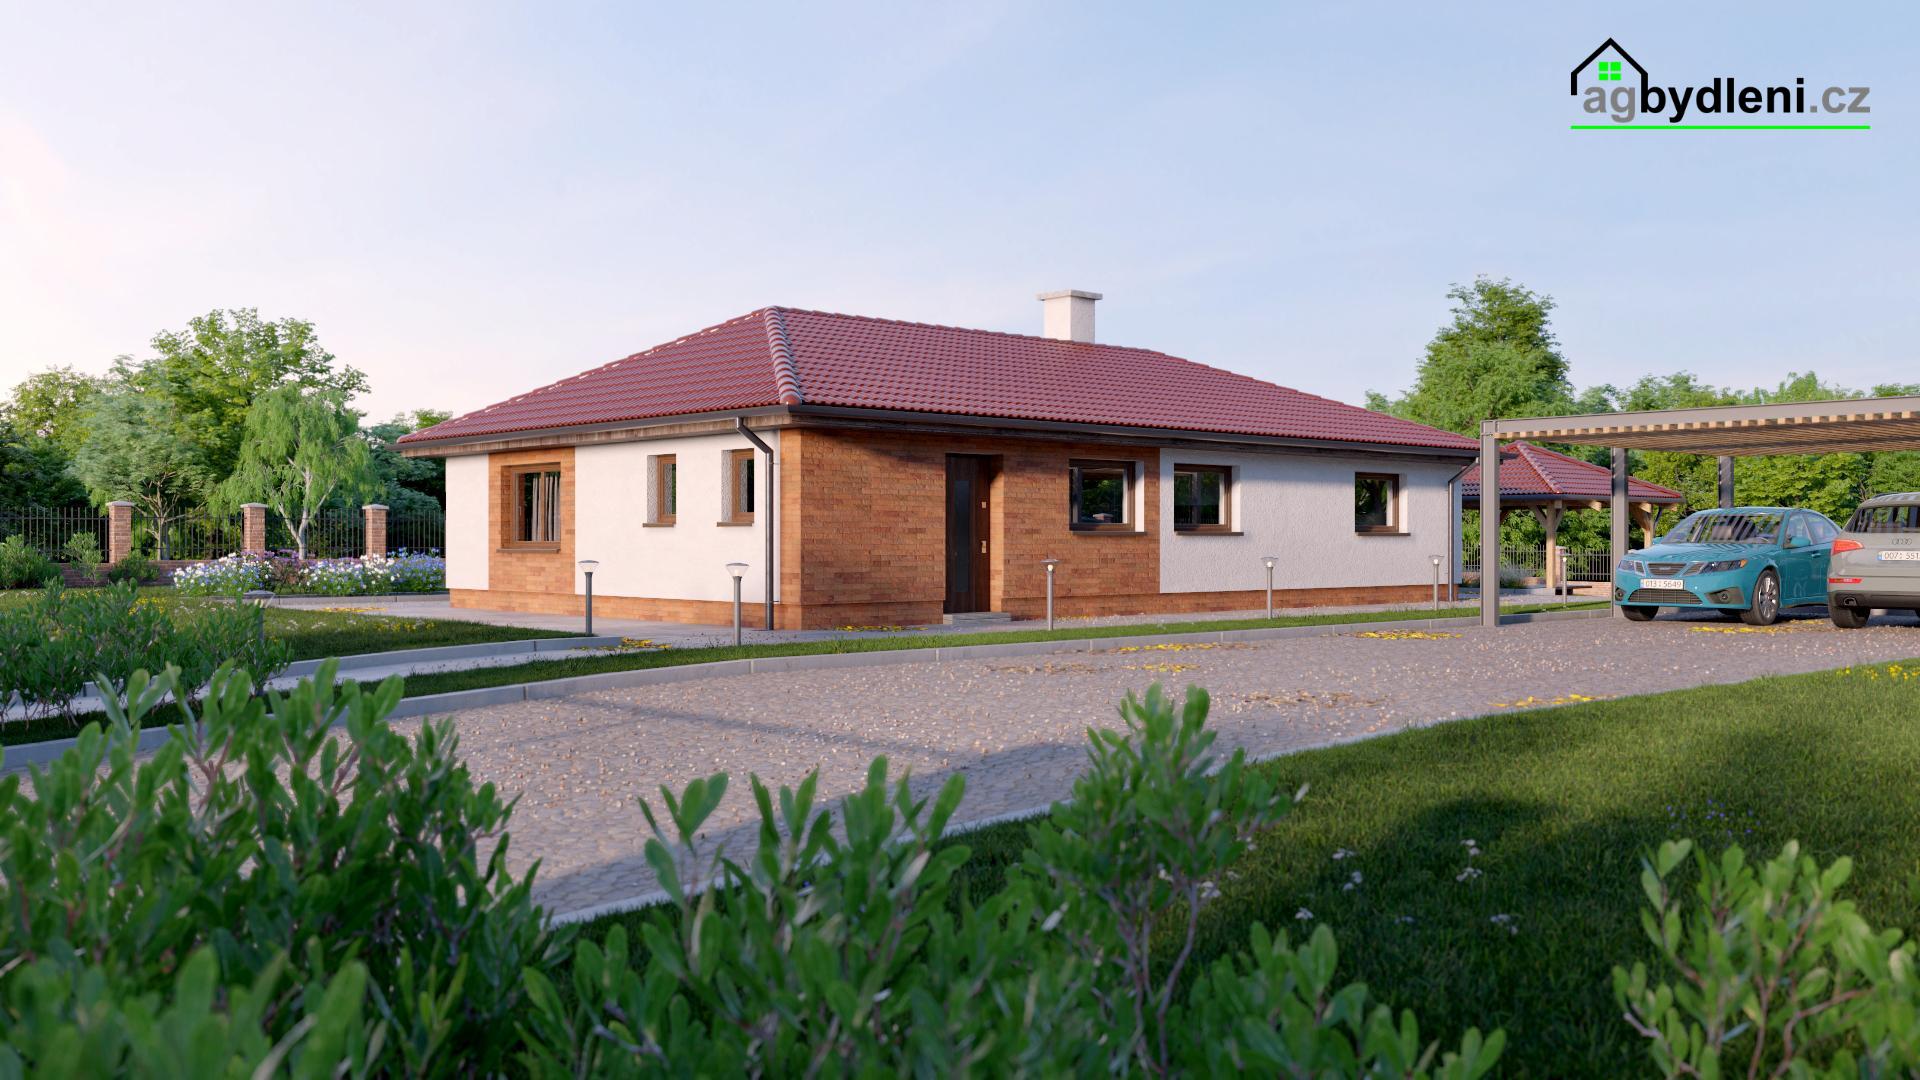 Prodej novostavby rodinného domu typu bungalov na zajištěném pozemku 1249 m2, obrázek č. 1